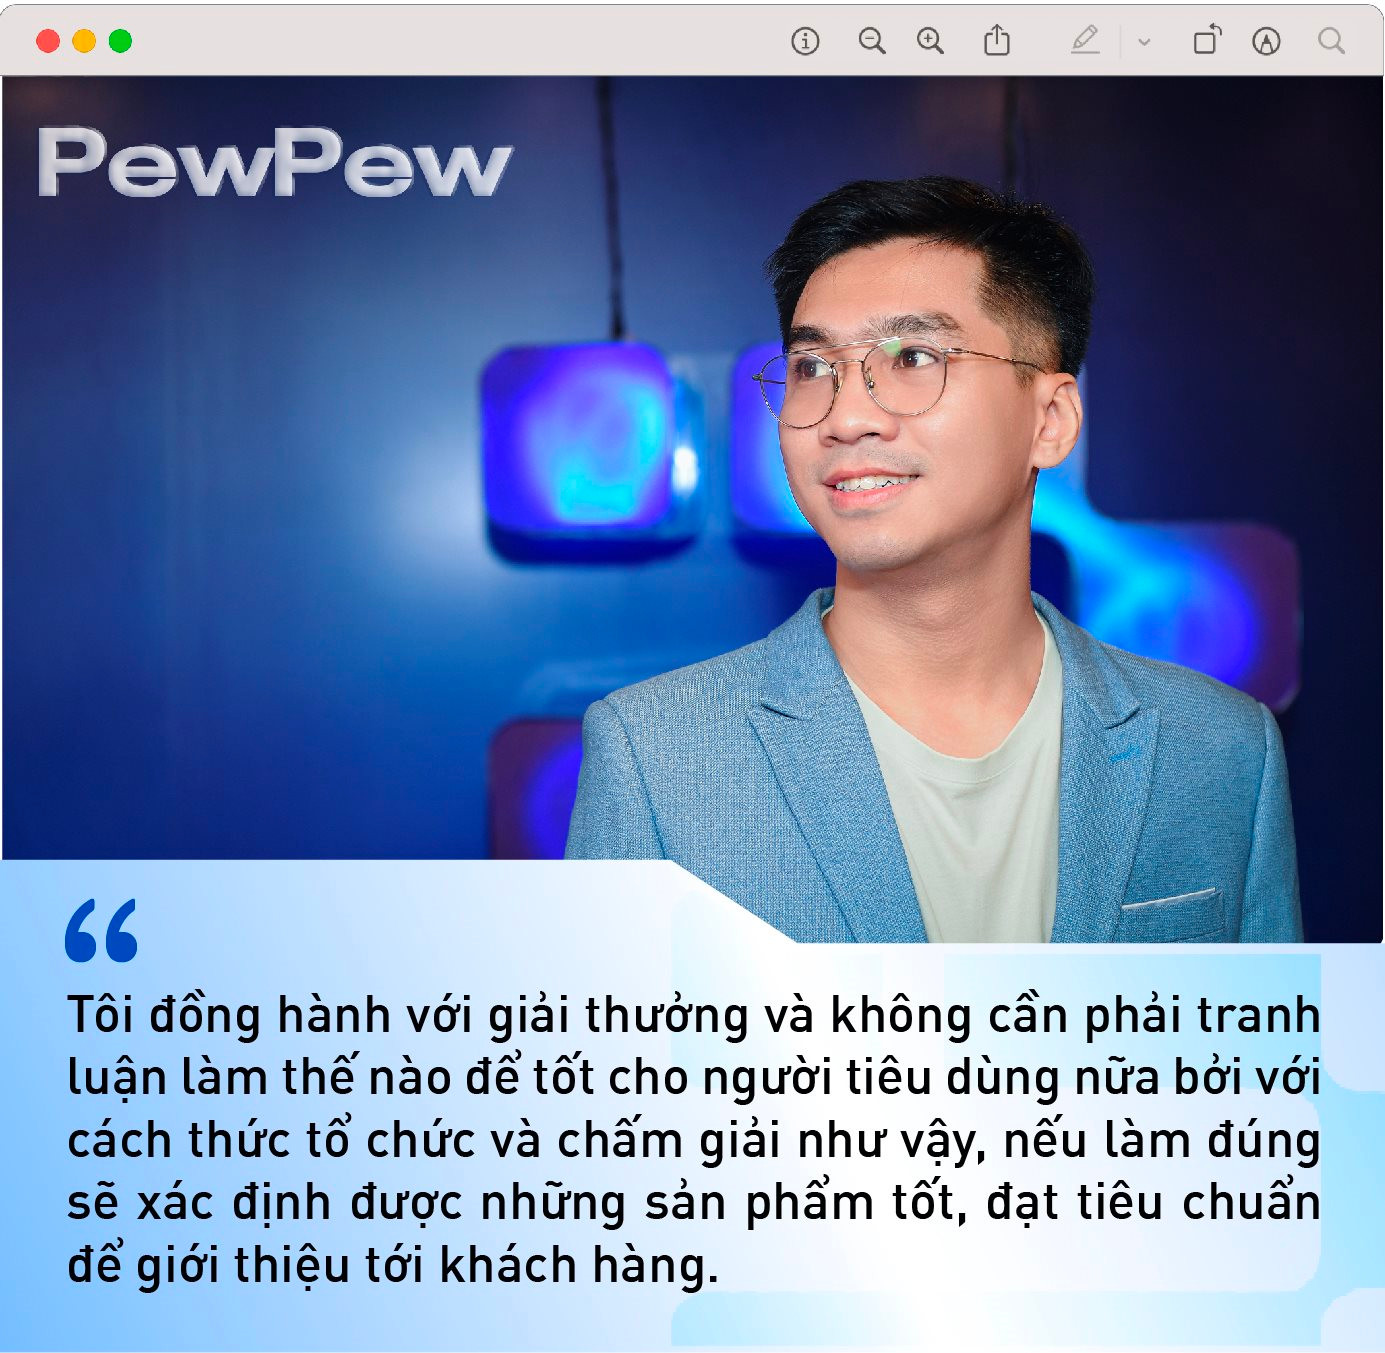 PewPew tiết lộ niềm vui lớn nhất khi livestream bán hàng trên Tiktok, và chuyện háo hức đồng hành cùng giải thưởng vì người tiêu dùng tầm quốc gia - Ảnh 7.